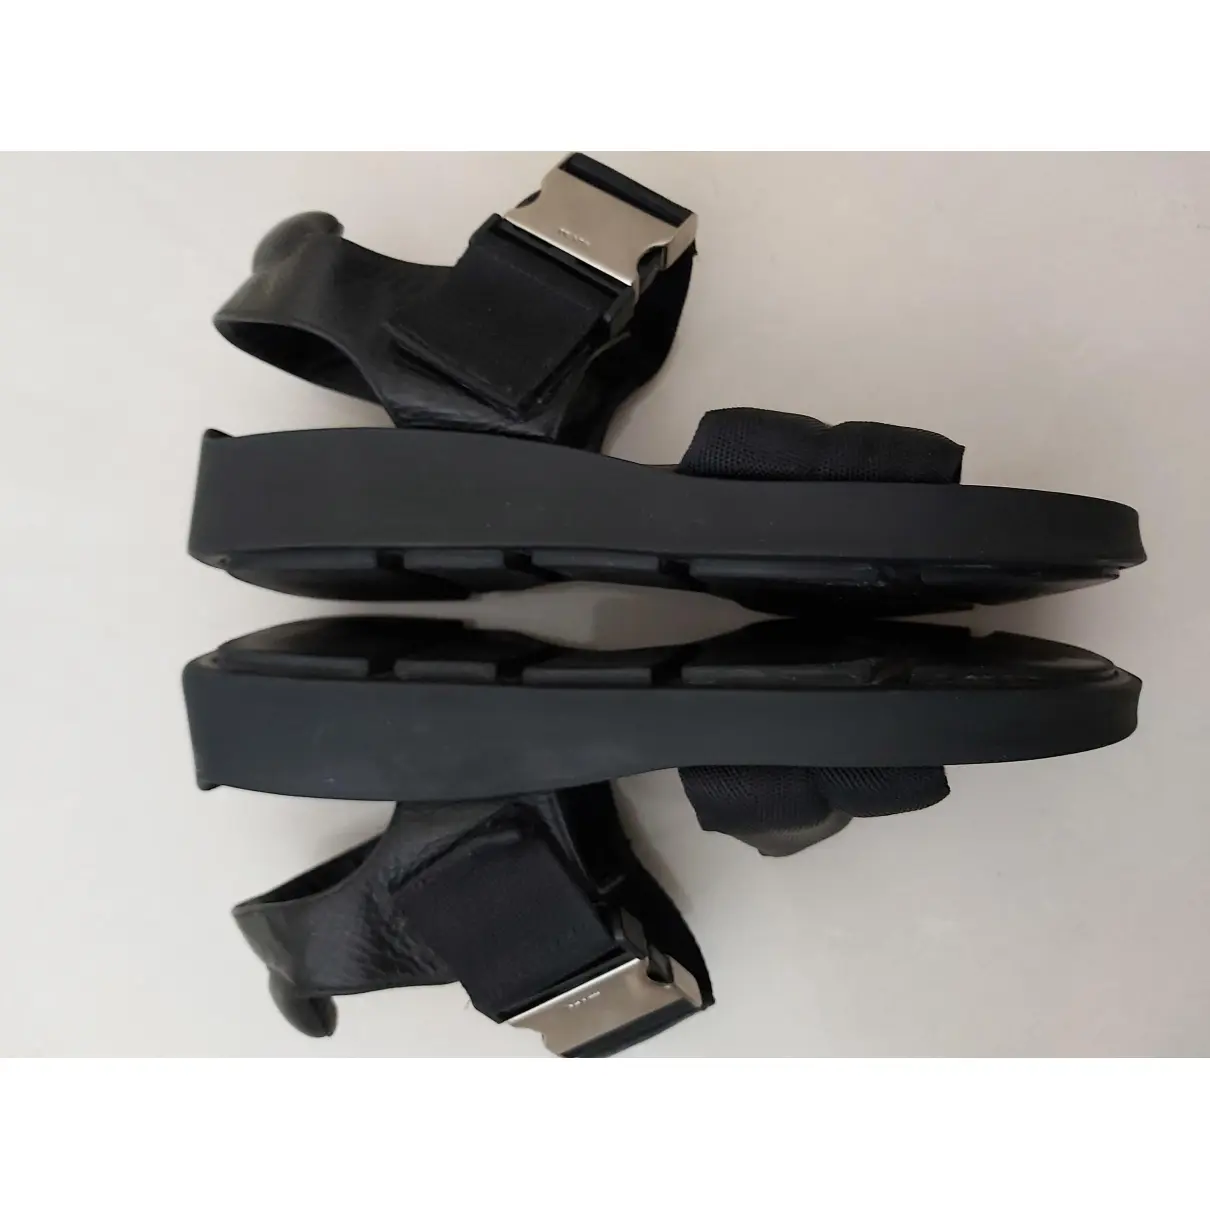 Leather sandals Prada - Vintage